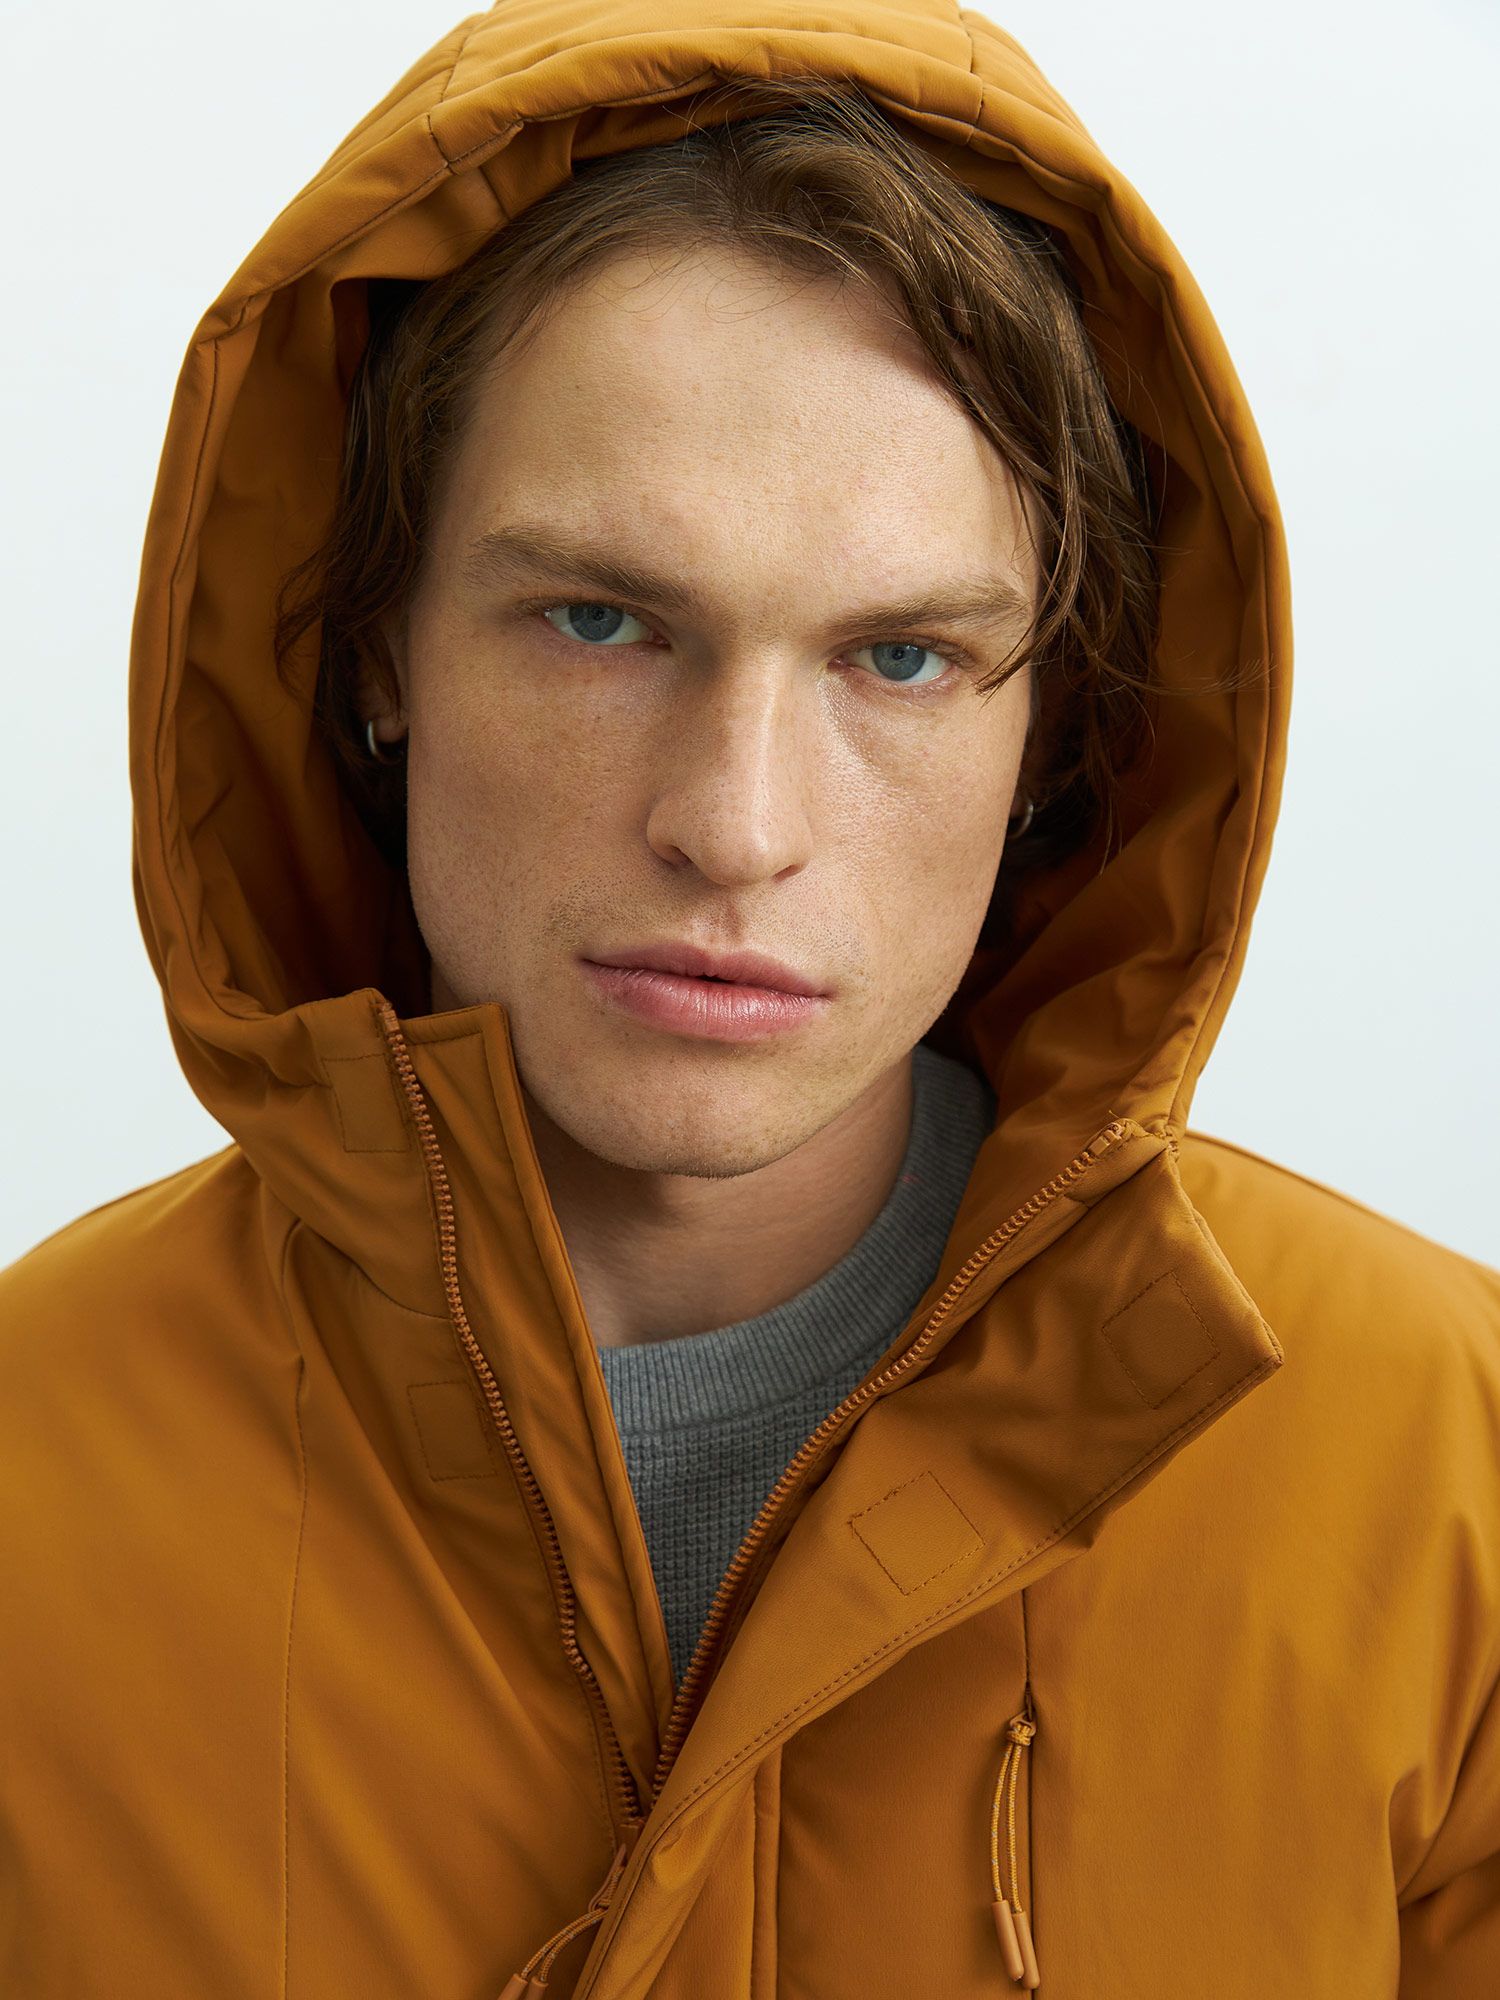 Утепленная мужская куртка из переработанного полиэстера. Изображение 7